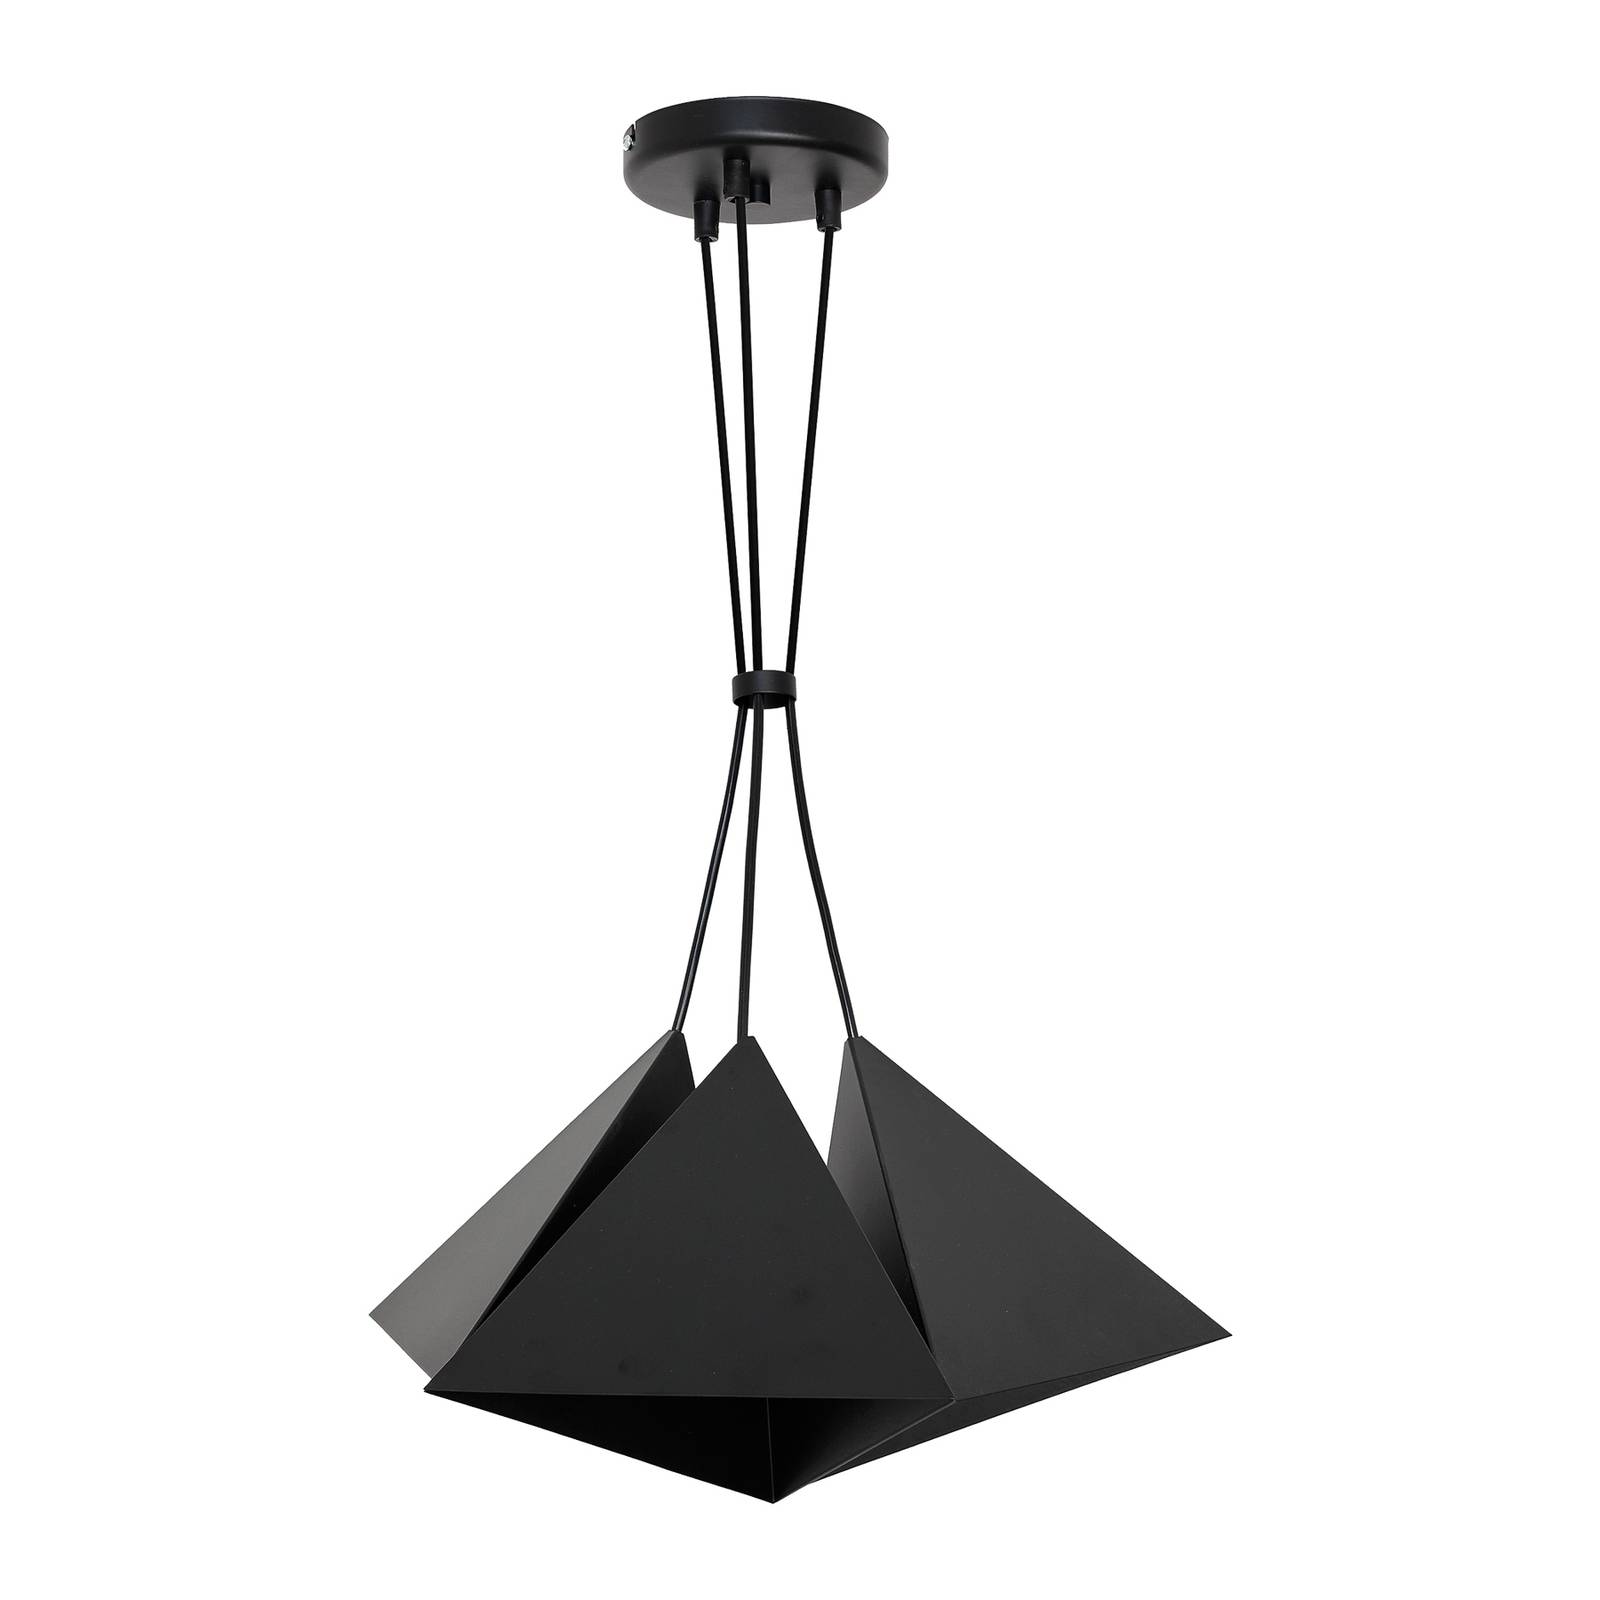 Hanglamp Tria met drie kappen in zwart